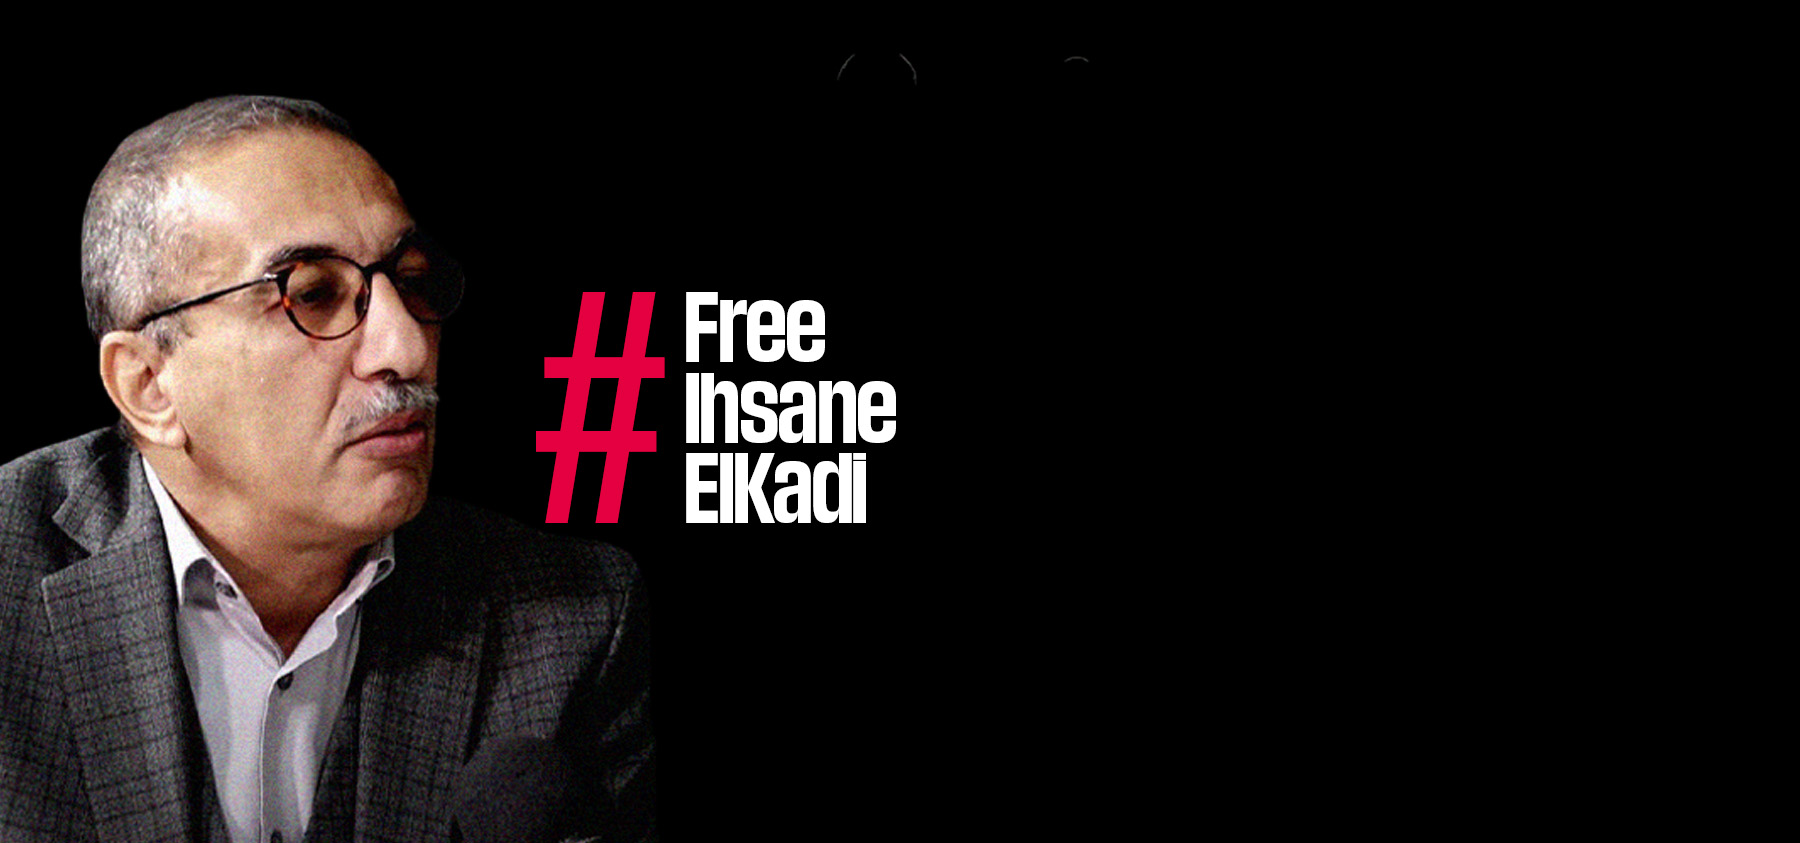 Ihsane el-Kadi vor schwarzem Hintergrund mit dem Hashtag "FreeIhsaneElKadi"